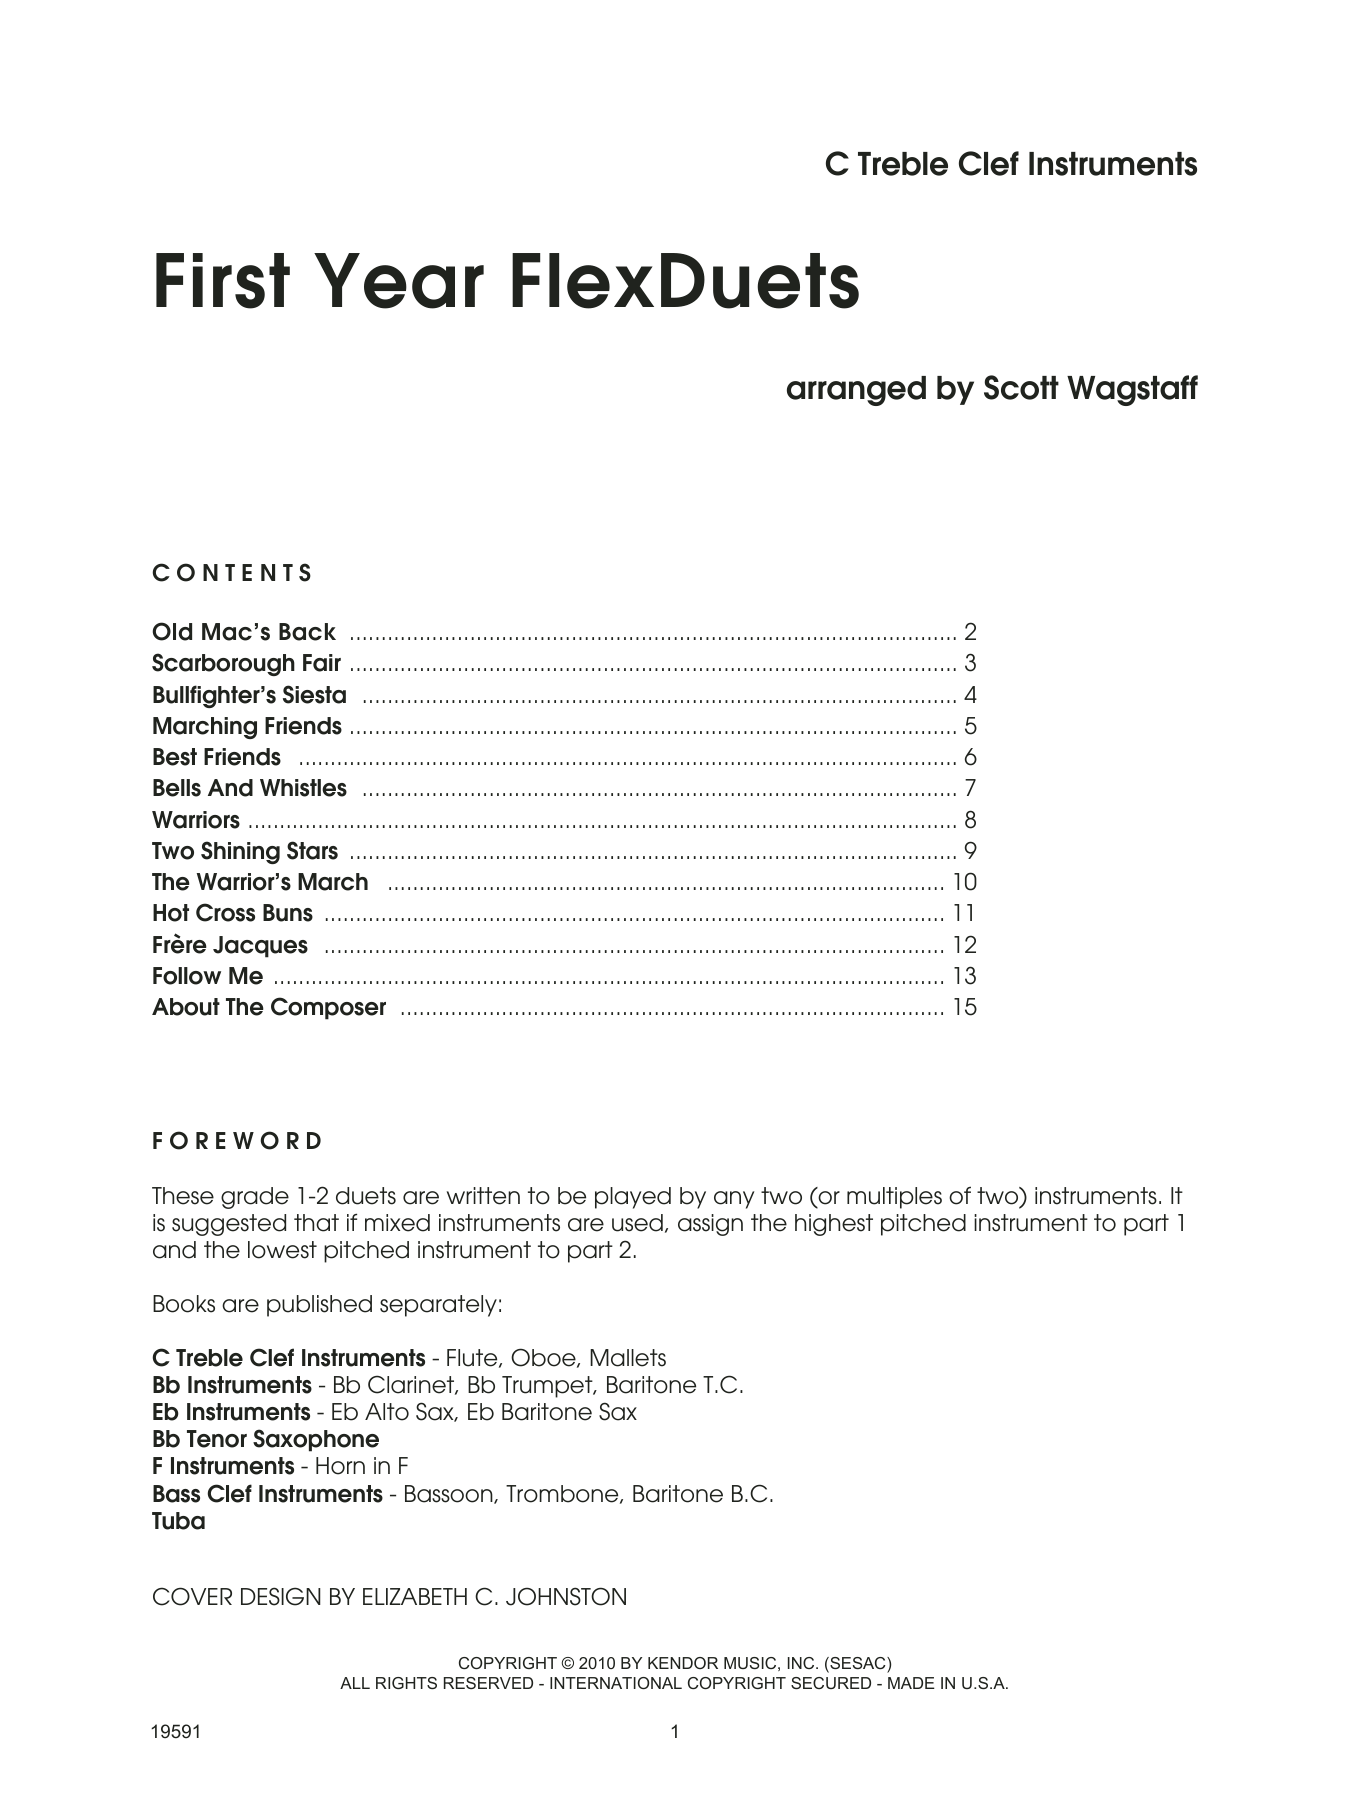 First Year FlexDuets - C Treble Clef Instruments (Woodwind Ensemble) von Scott Wagstaff